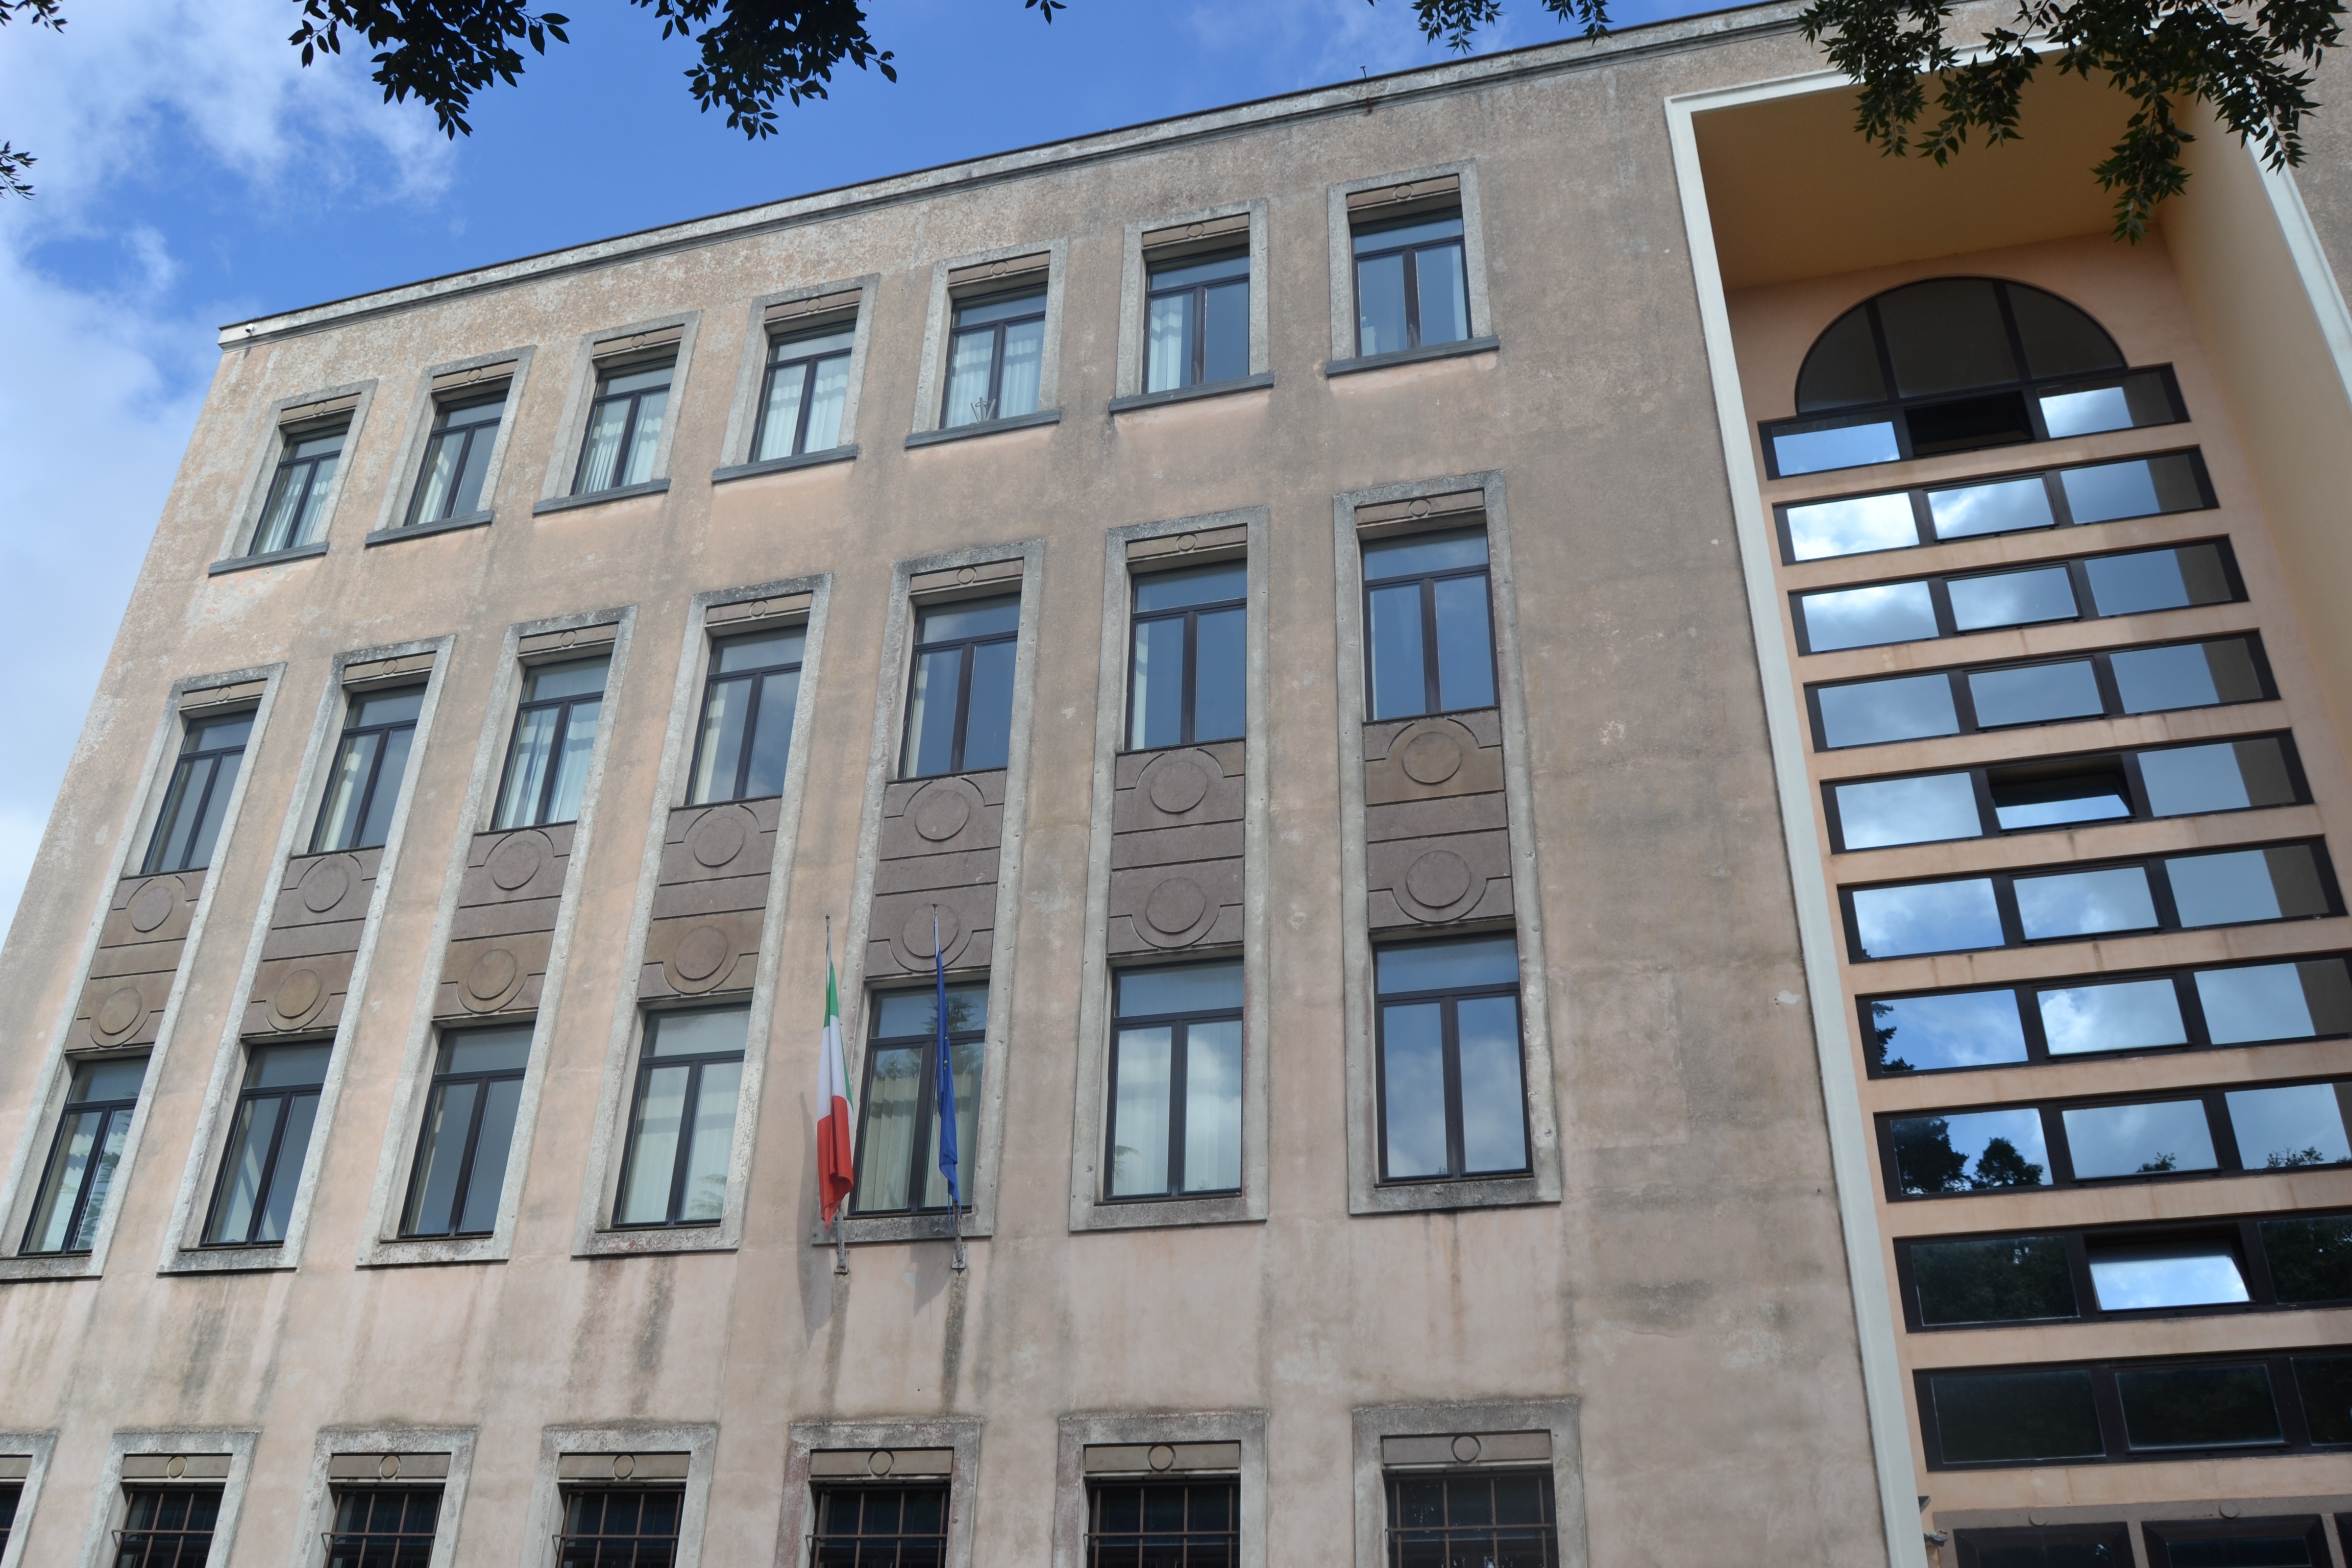 Nuovo Palazzo degli Uffici Finanziari (palazzo, per uffici) - Vibo Valentia (VV)  (XX)